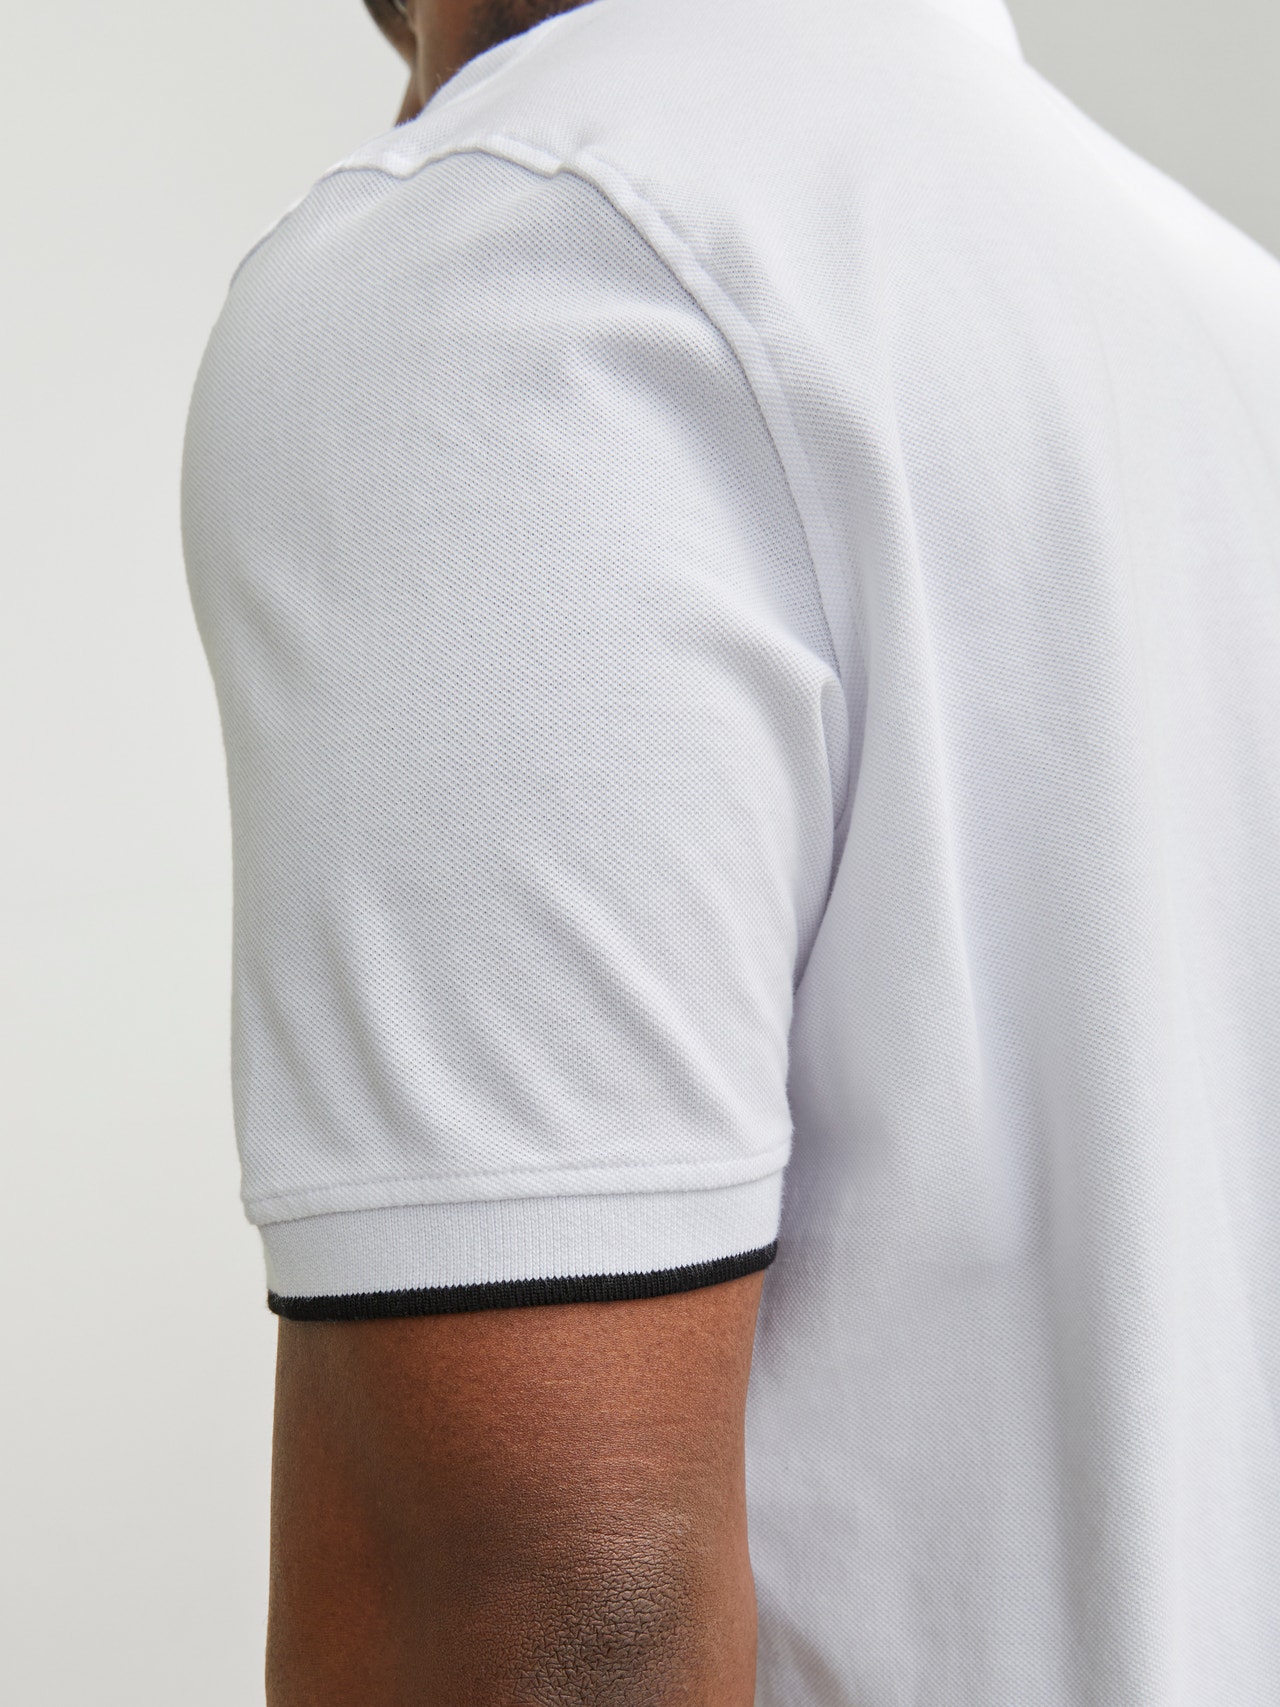 Jack & Jones Plus Size T-shirt Uni -White - 12143859